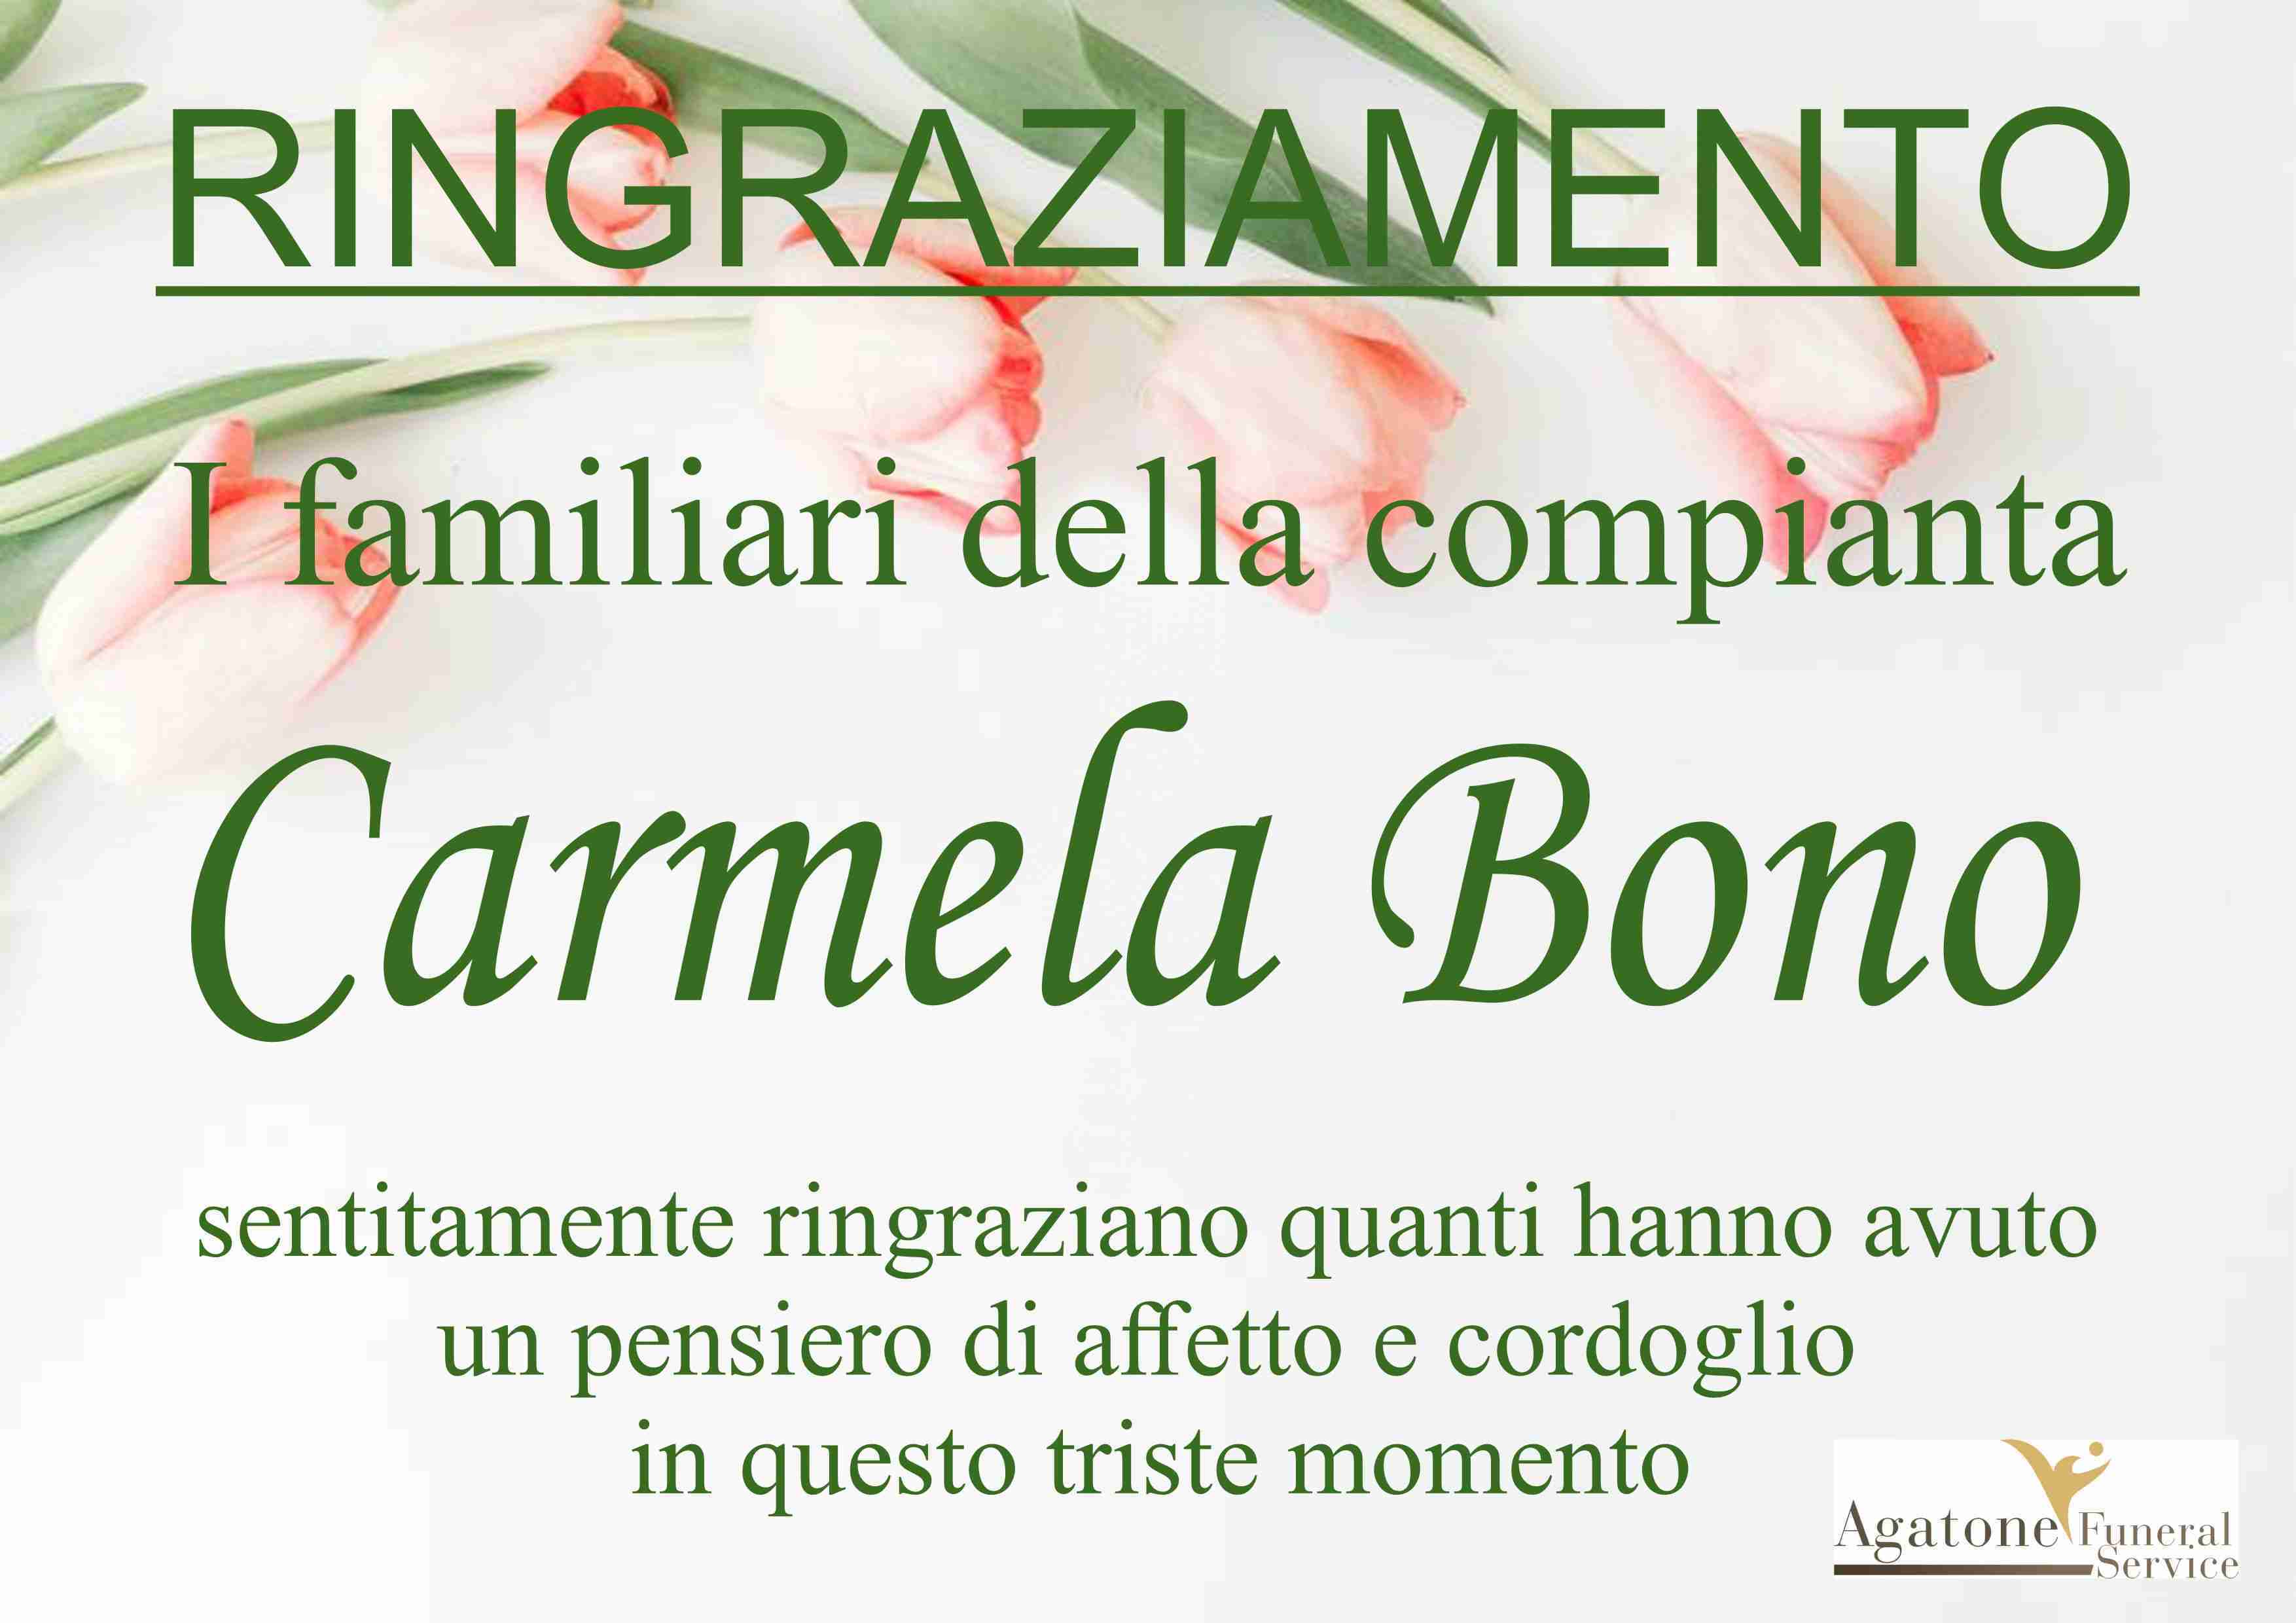 Carmela Bono